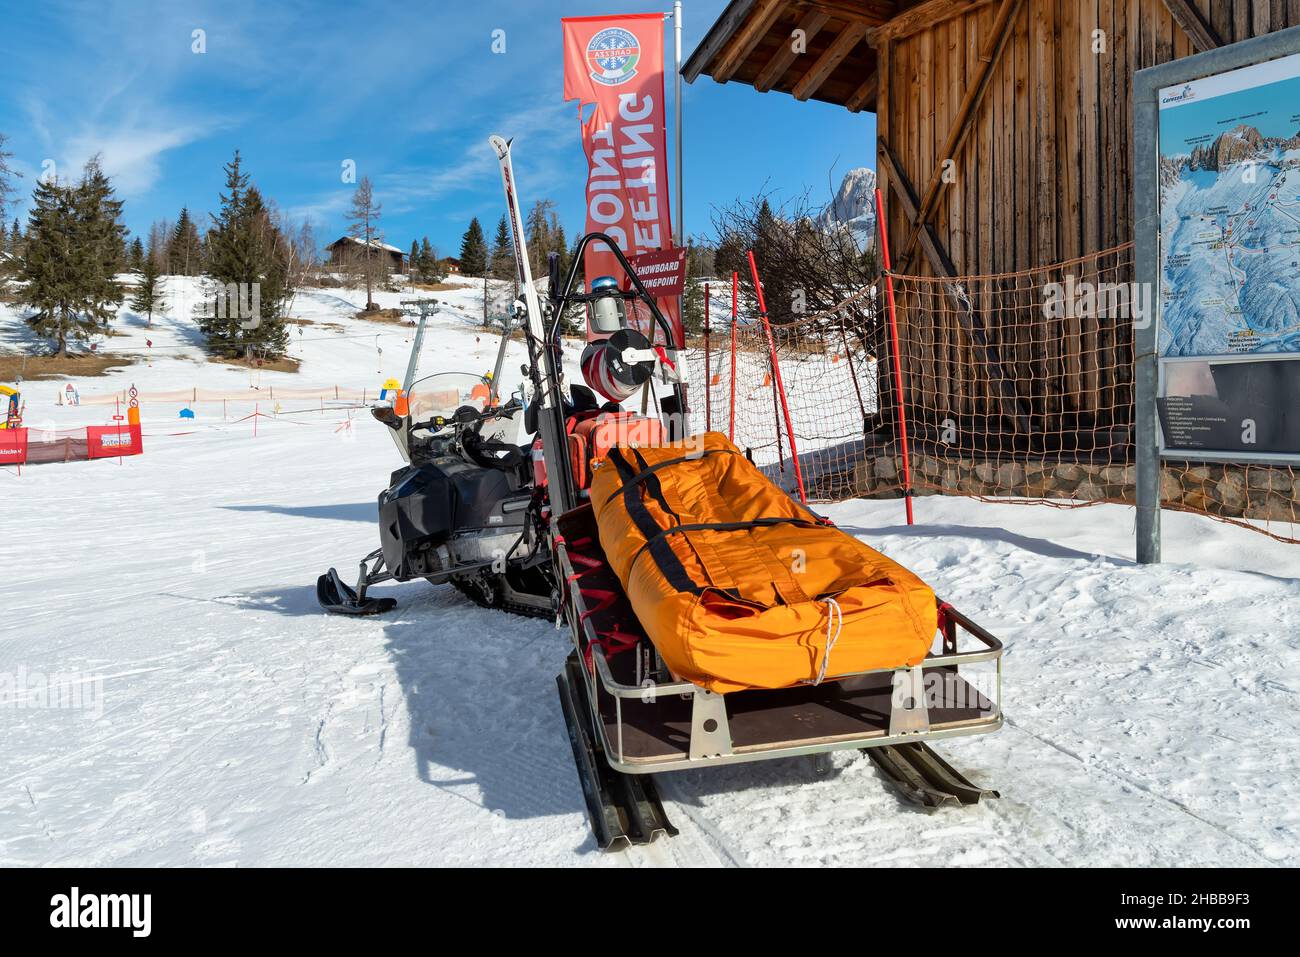 Bergrettung Schneemobil zur Rettung auf der Skipiste Stockfoto